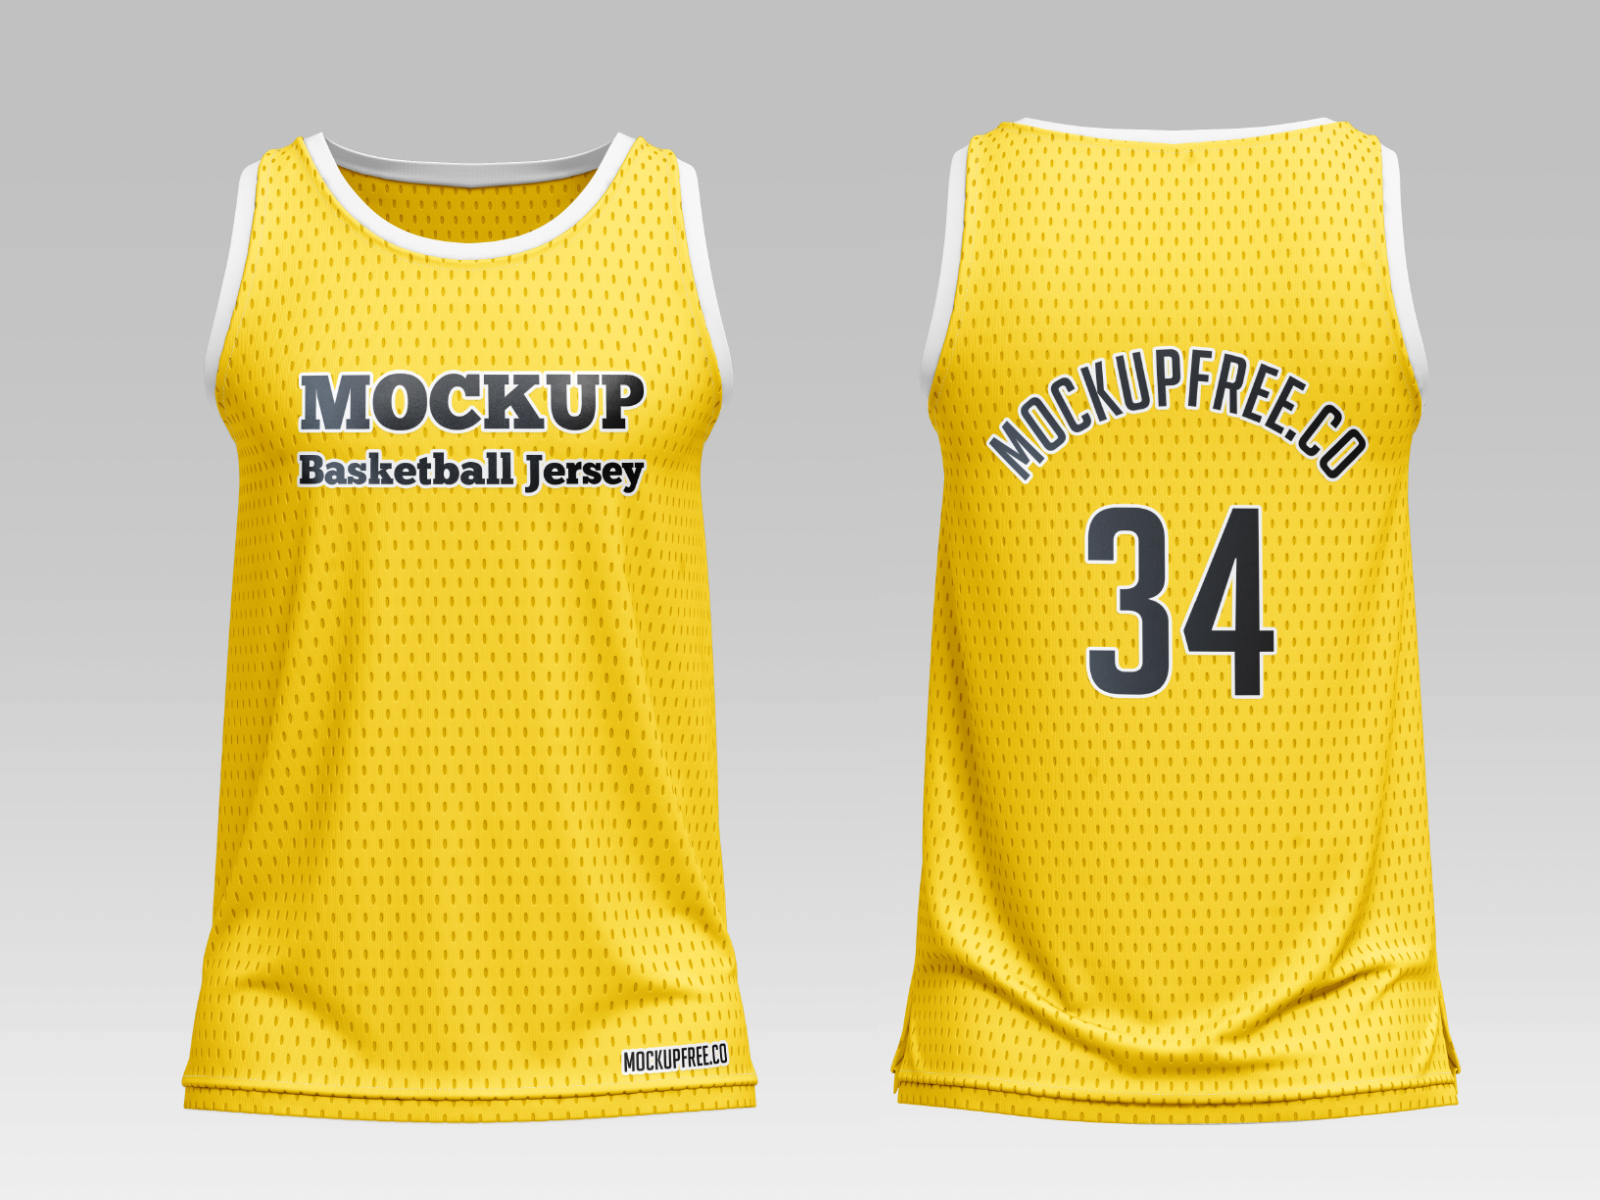 Mockup Basketball Jersey